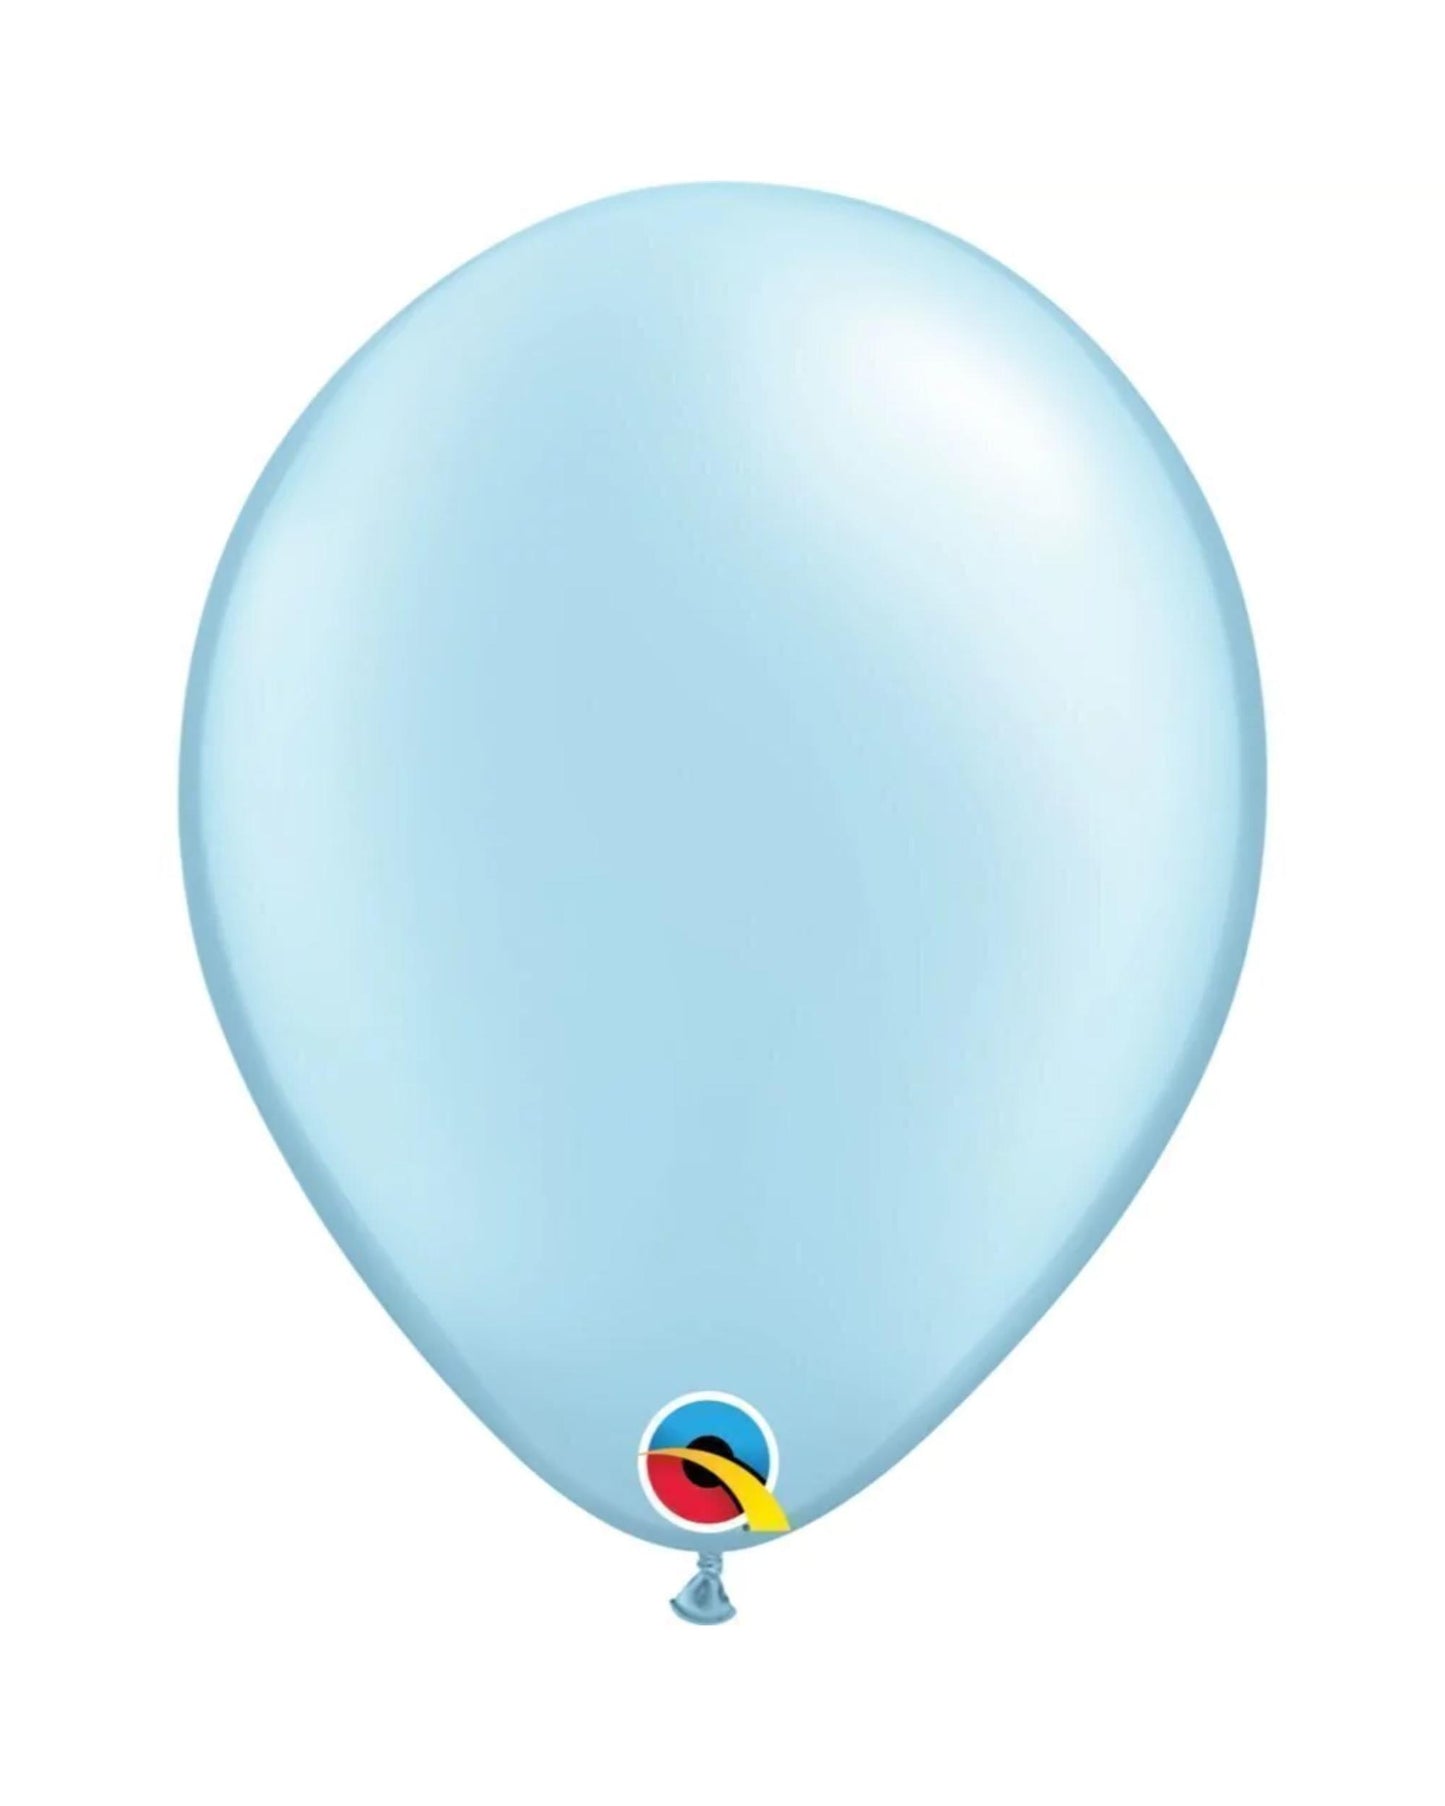 Balão 11 Pol. Azul gelo perolado